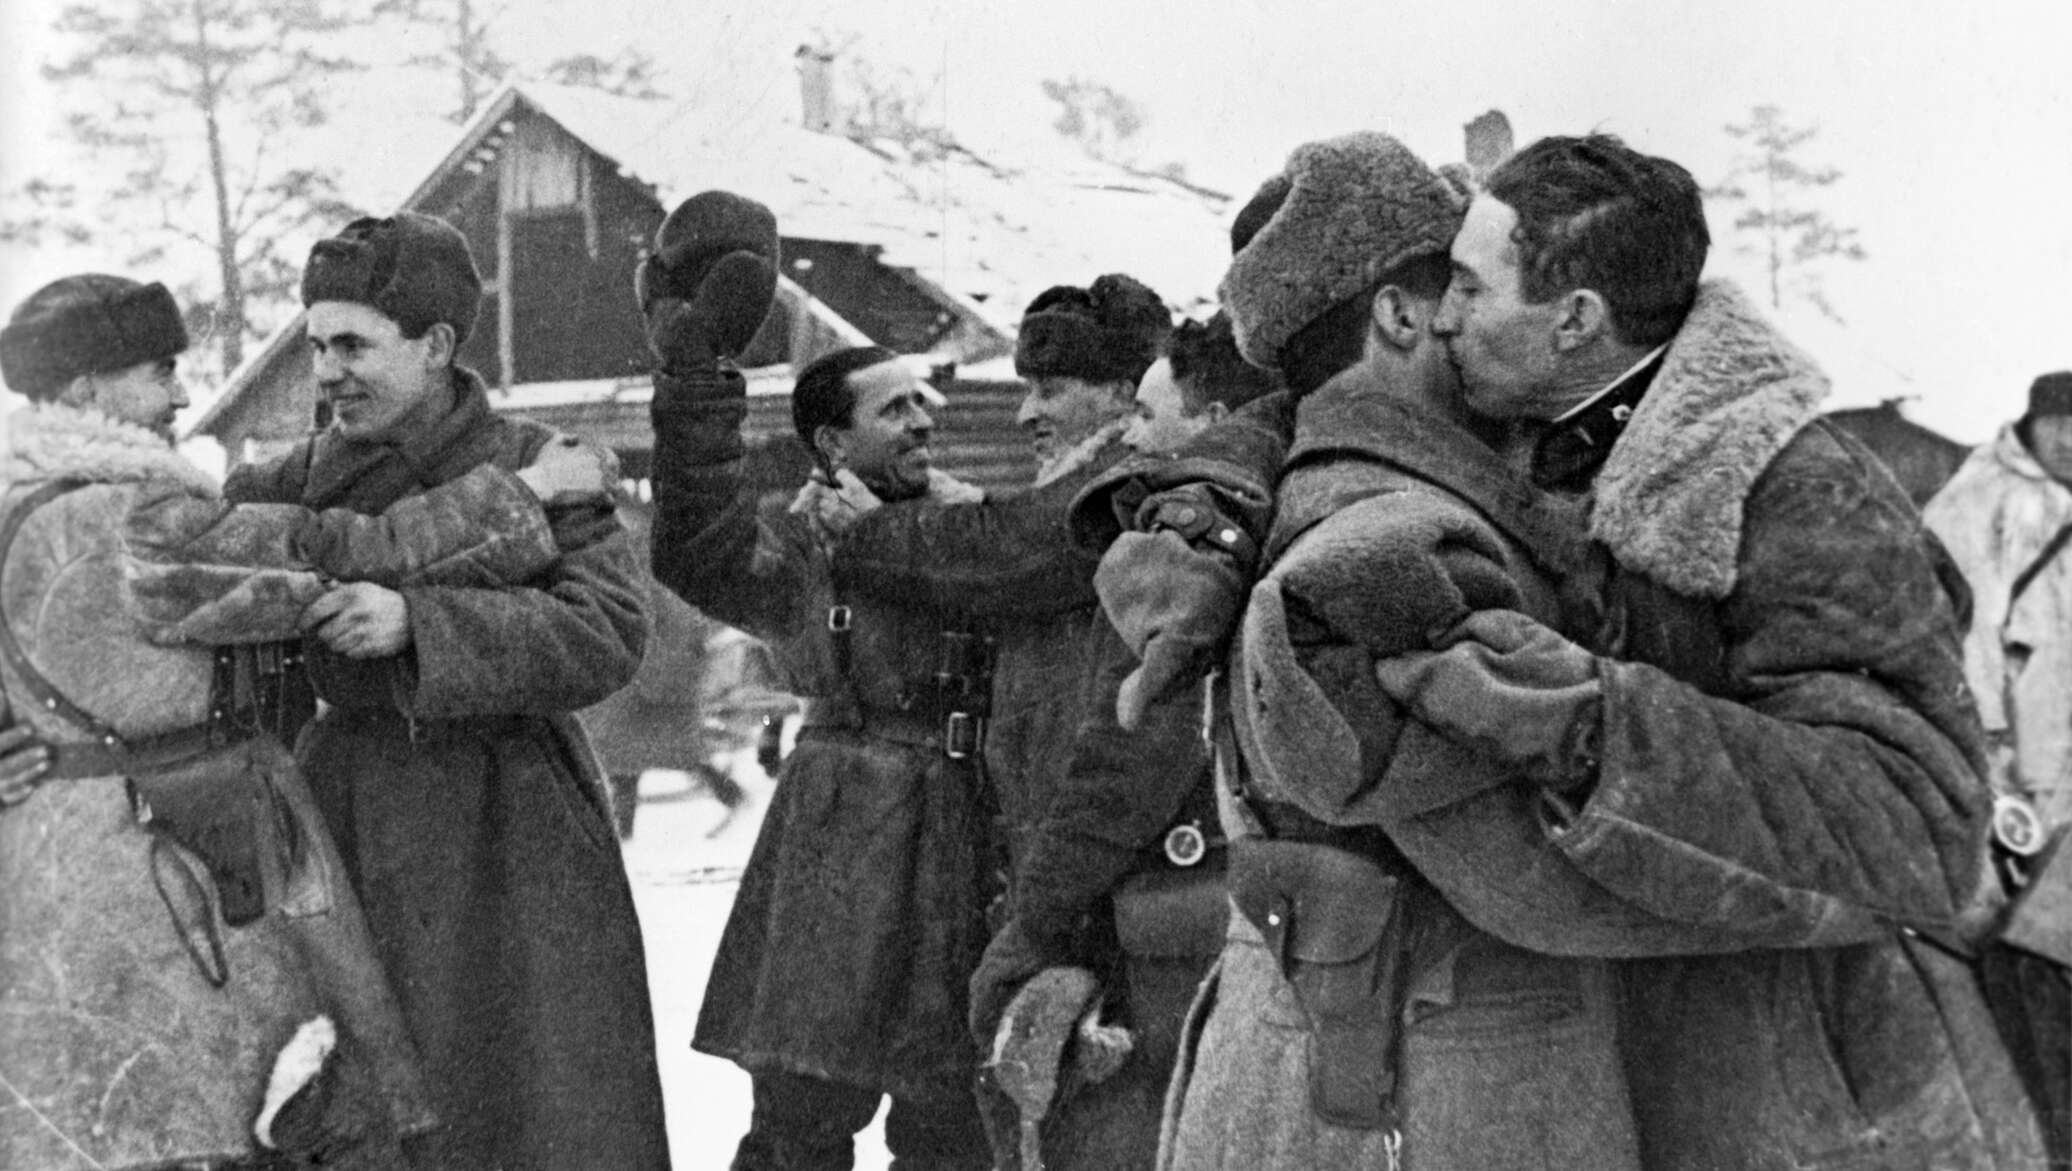 Ленинград 1944 год освобождение